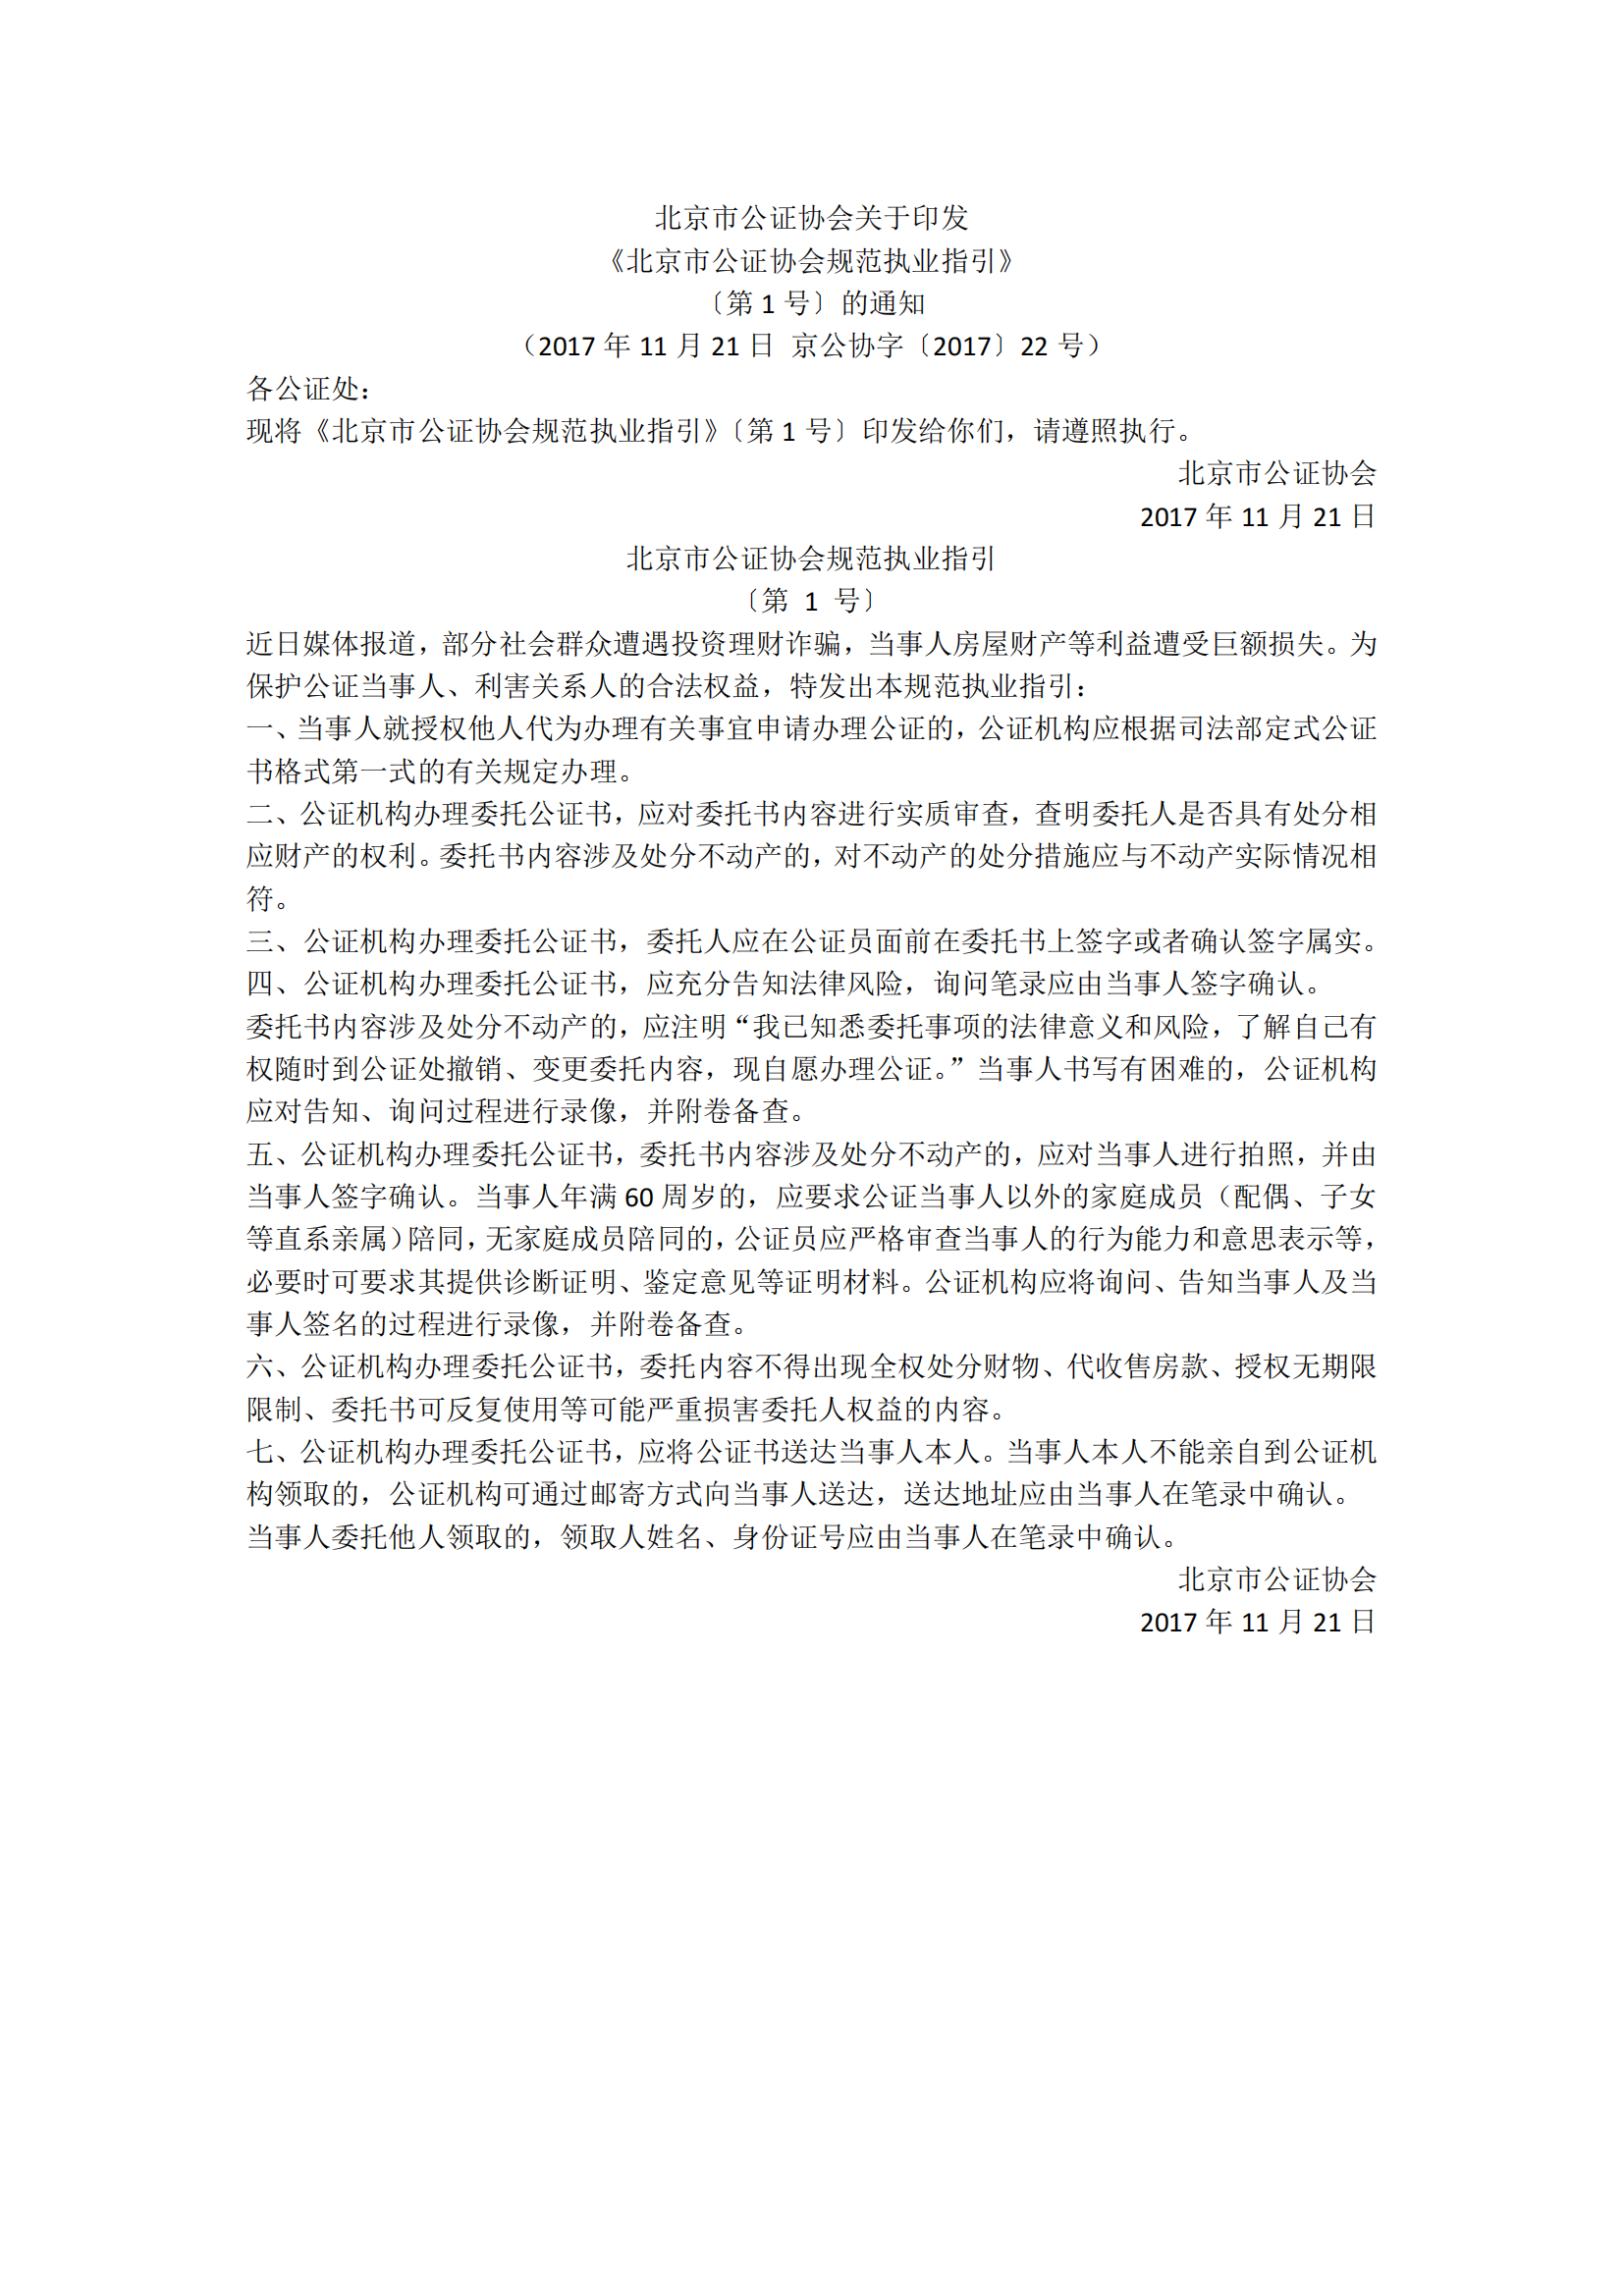 1、北京市公证协会关于印发《北京市公证协会规范执业指引》第1号的通知_00